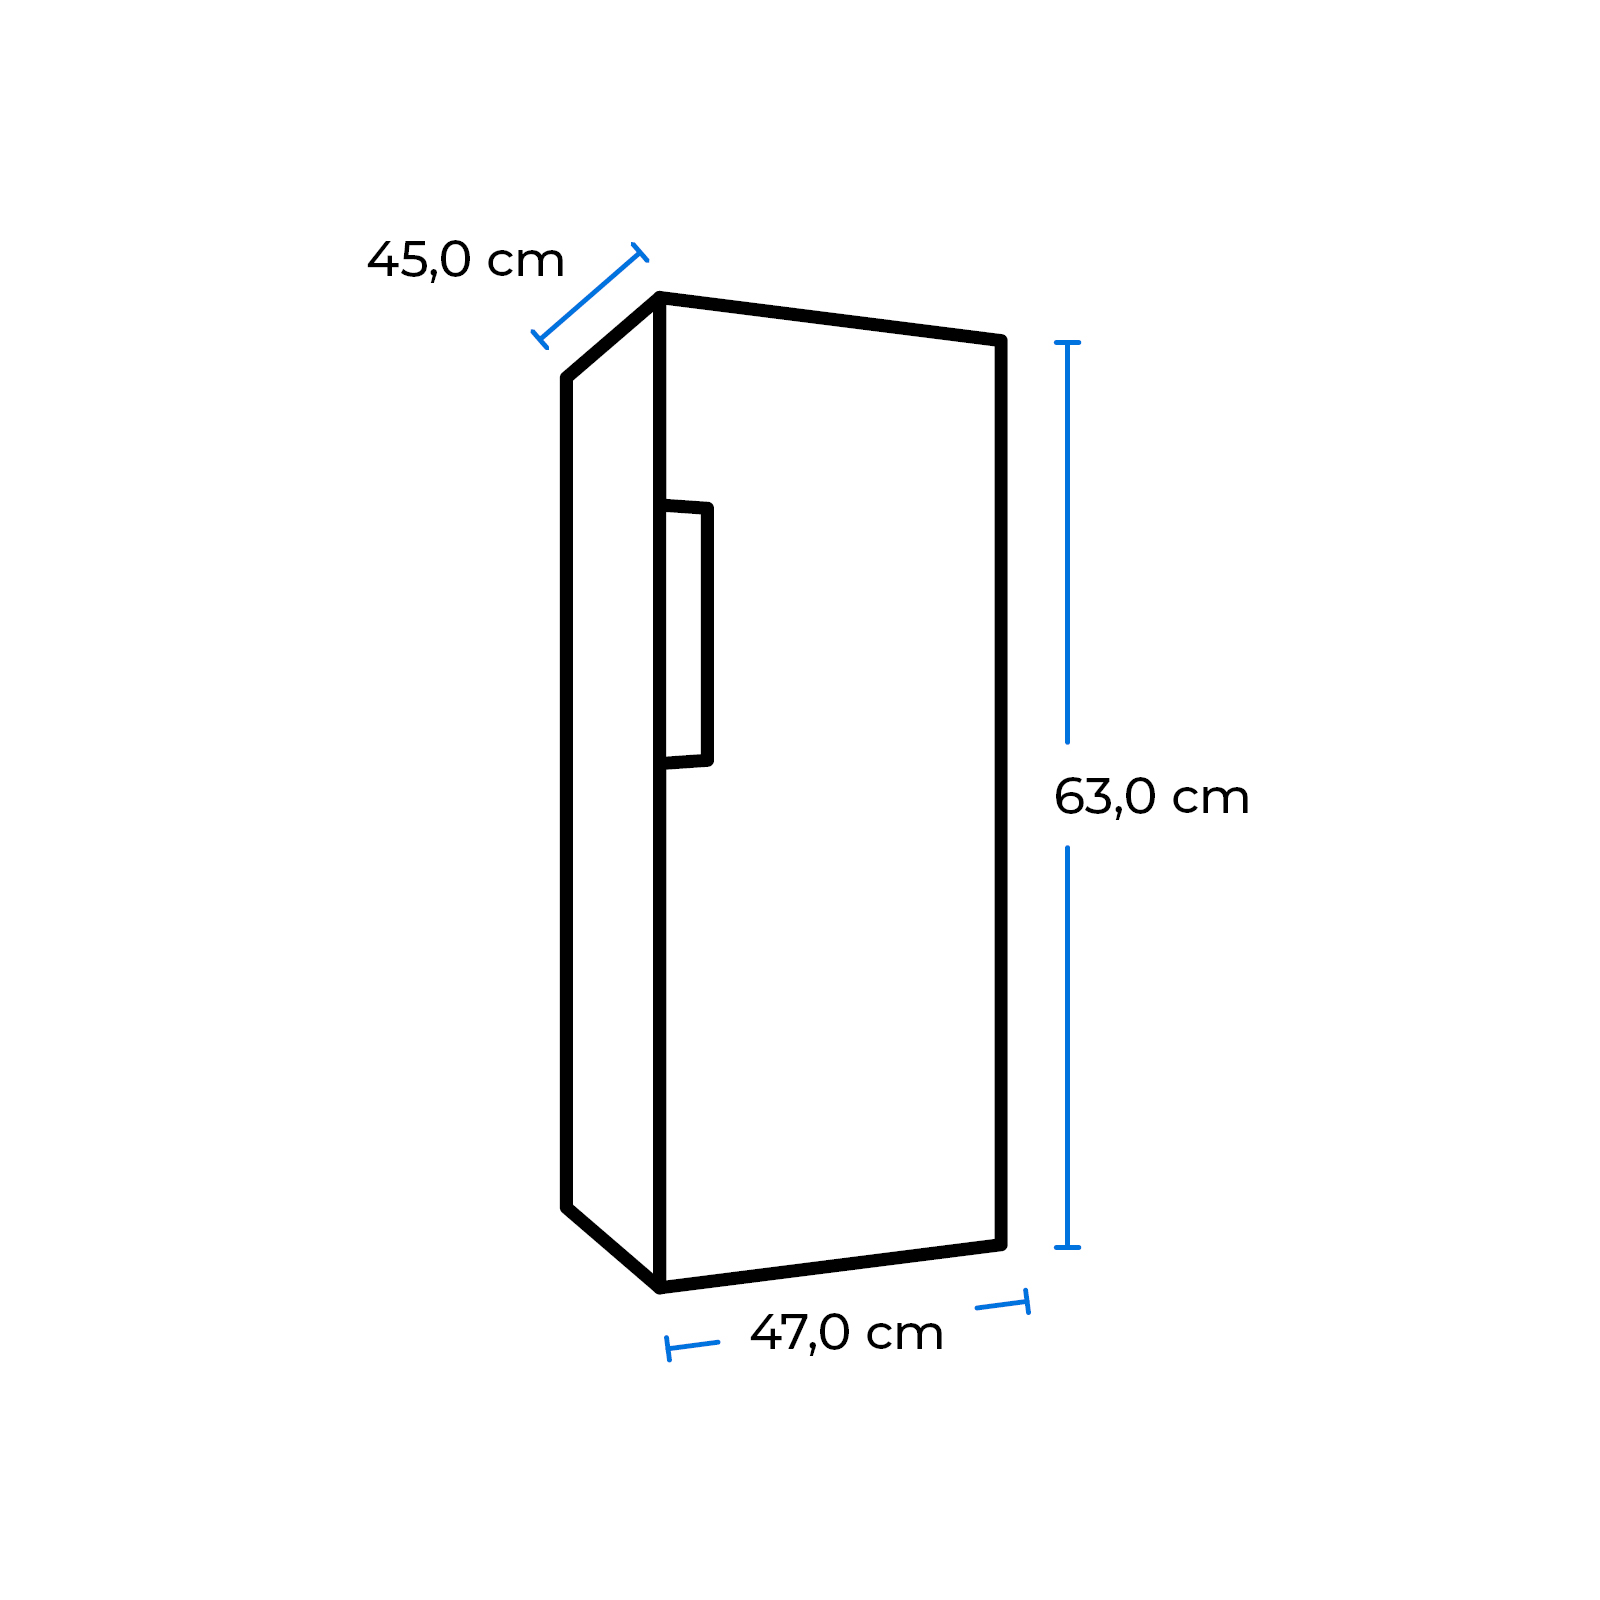 EXQUISIT GB60-150E 630 Gefrierschrank mm (E, hoch) grauPV